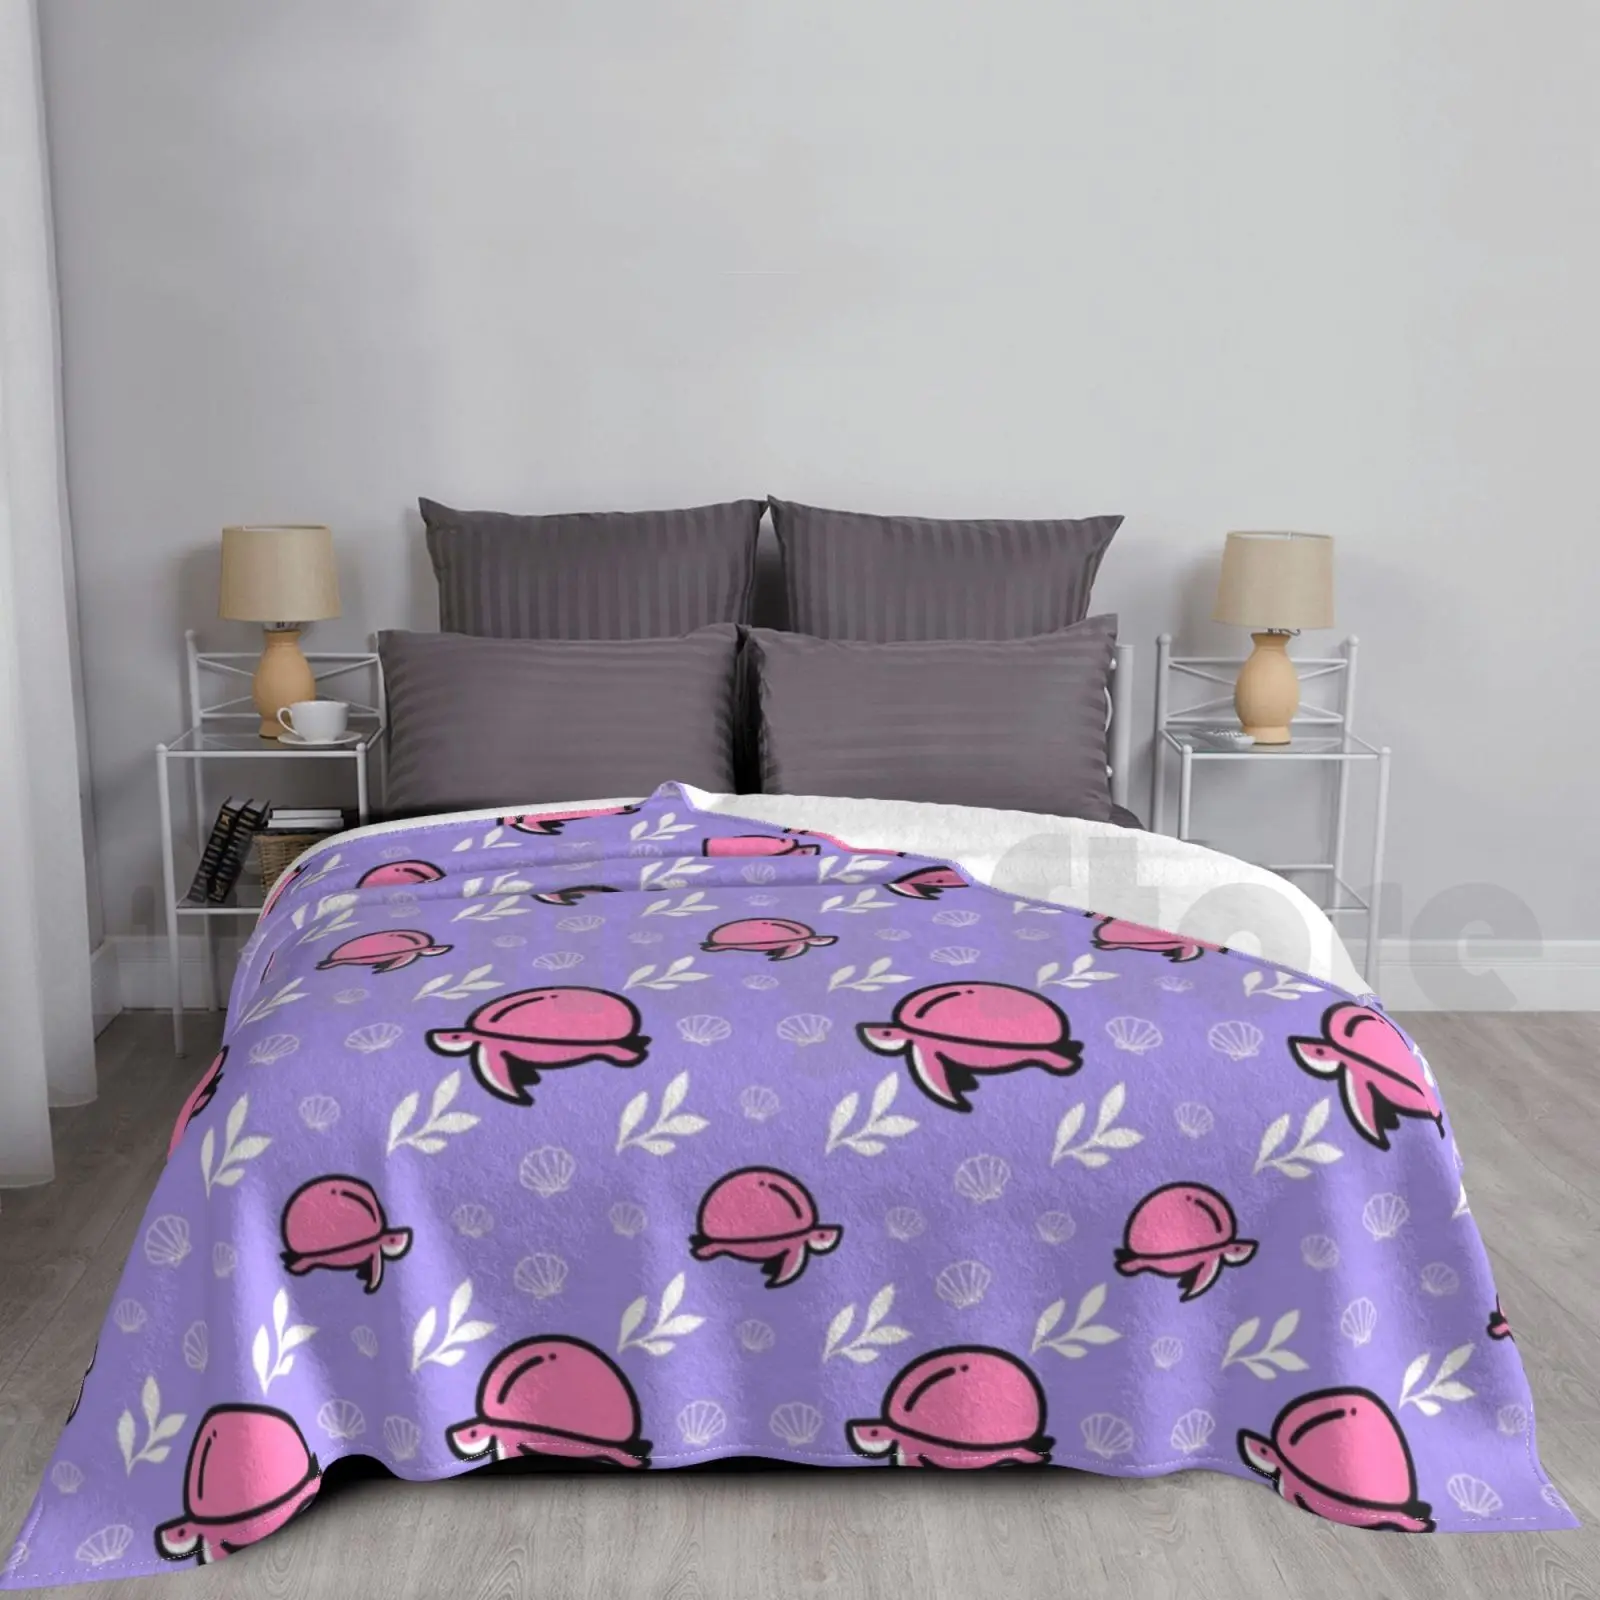 

Розовые румяна черепаха ракушка фиолетовый лиловый фиолетовый фон одеяло для дивана кровати путешествия черепаха влюбленные море